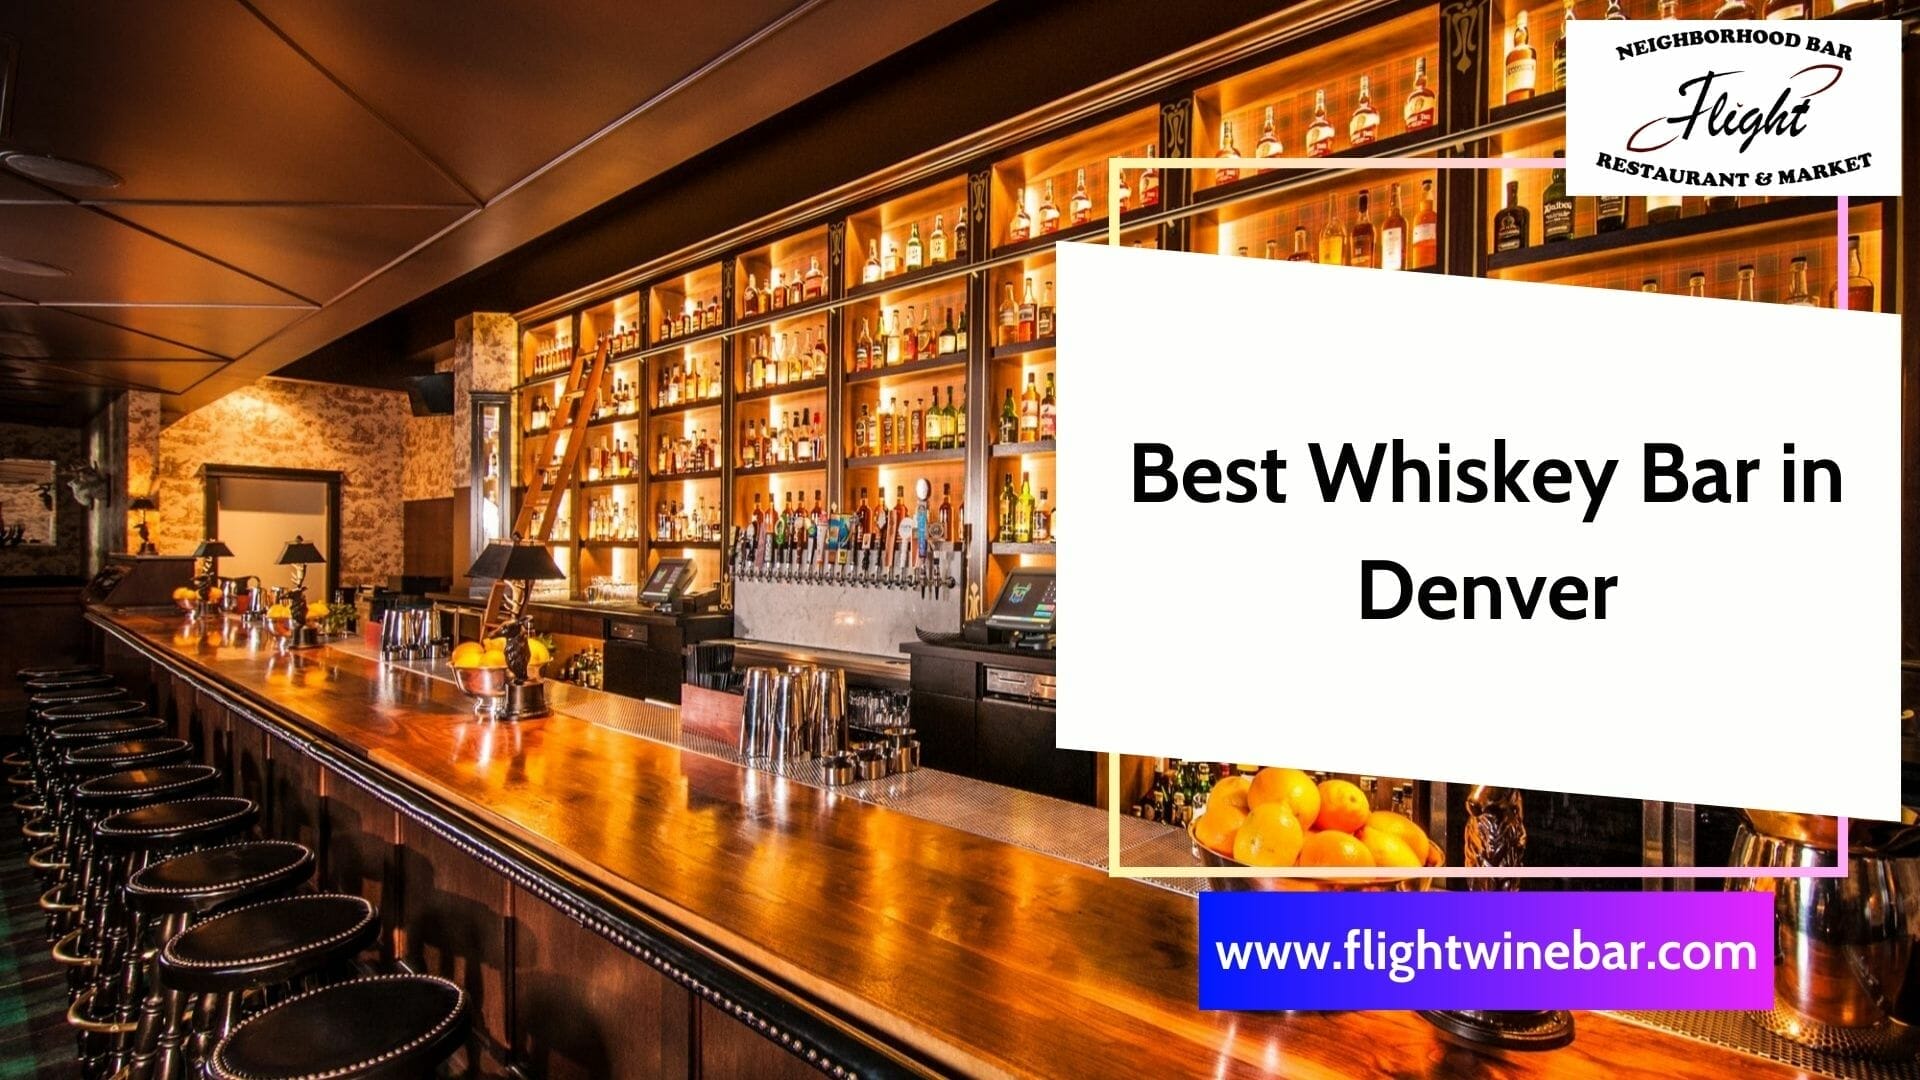 Best Whiskey Bar in Denver